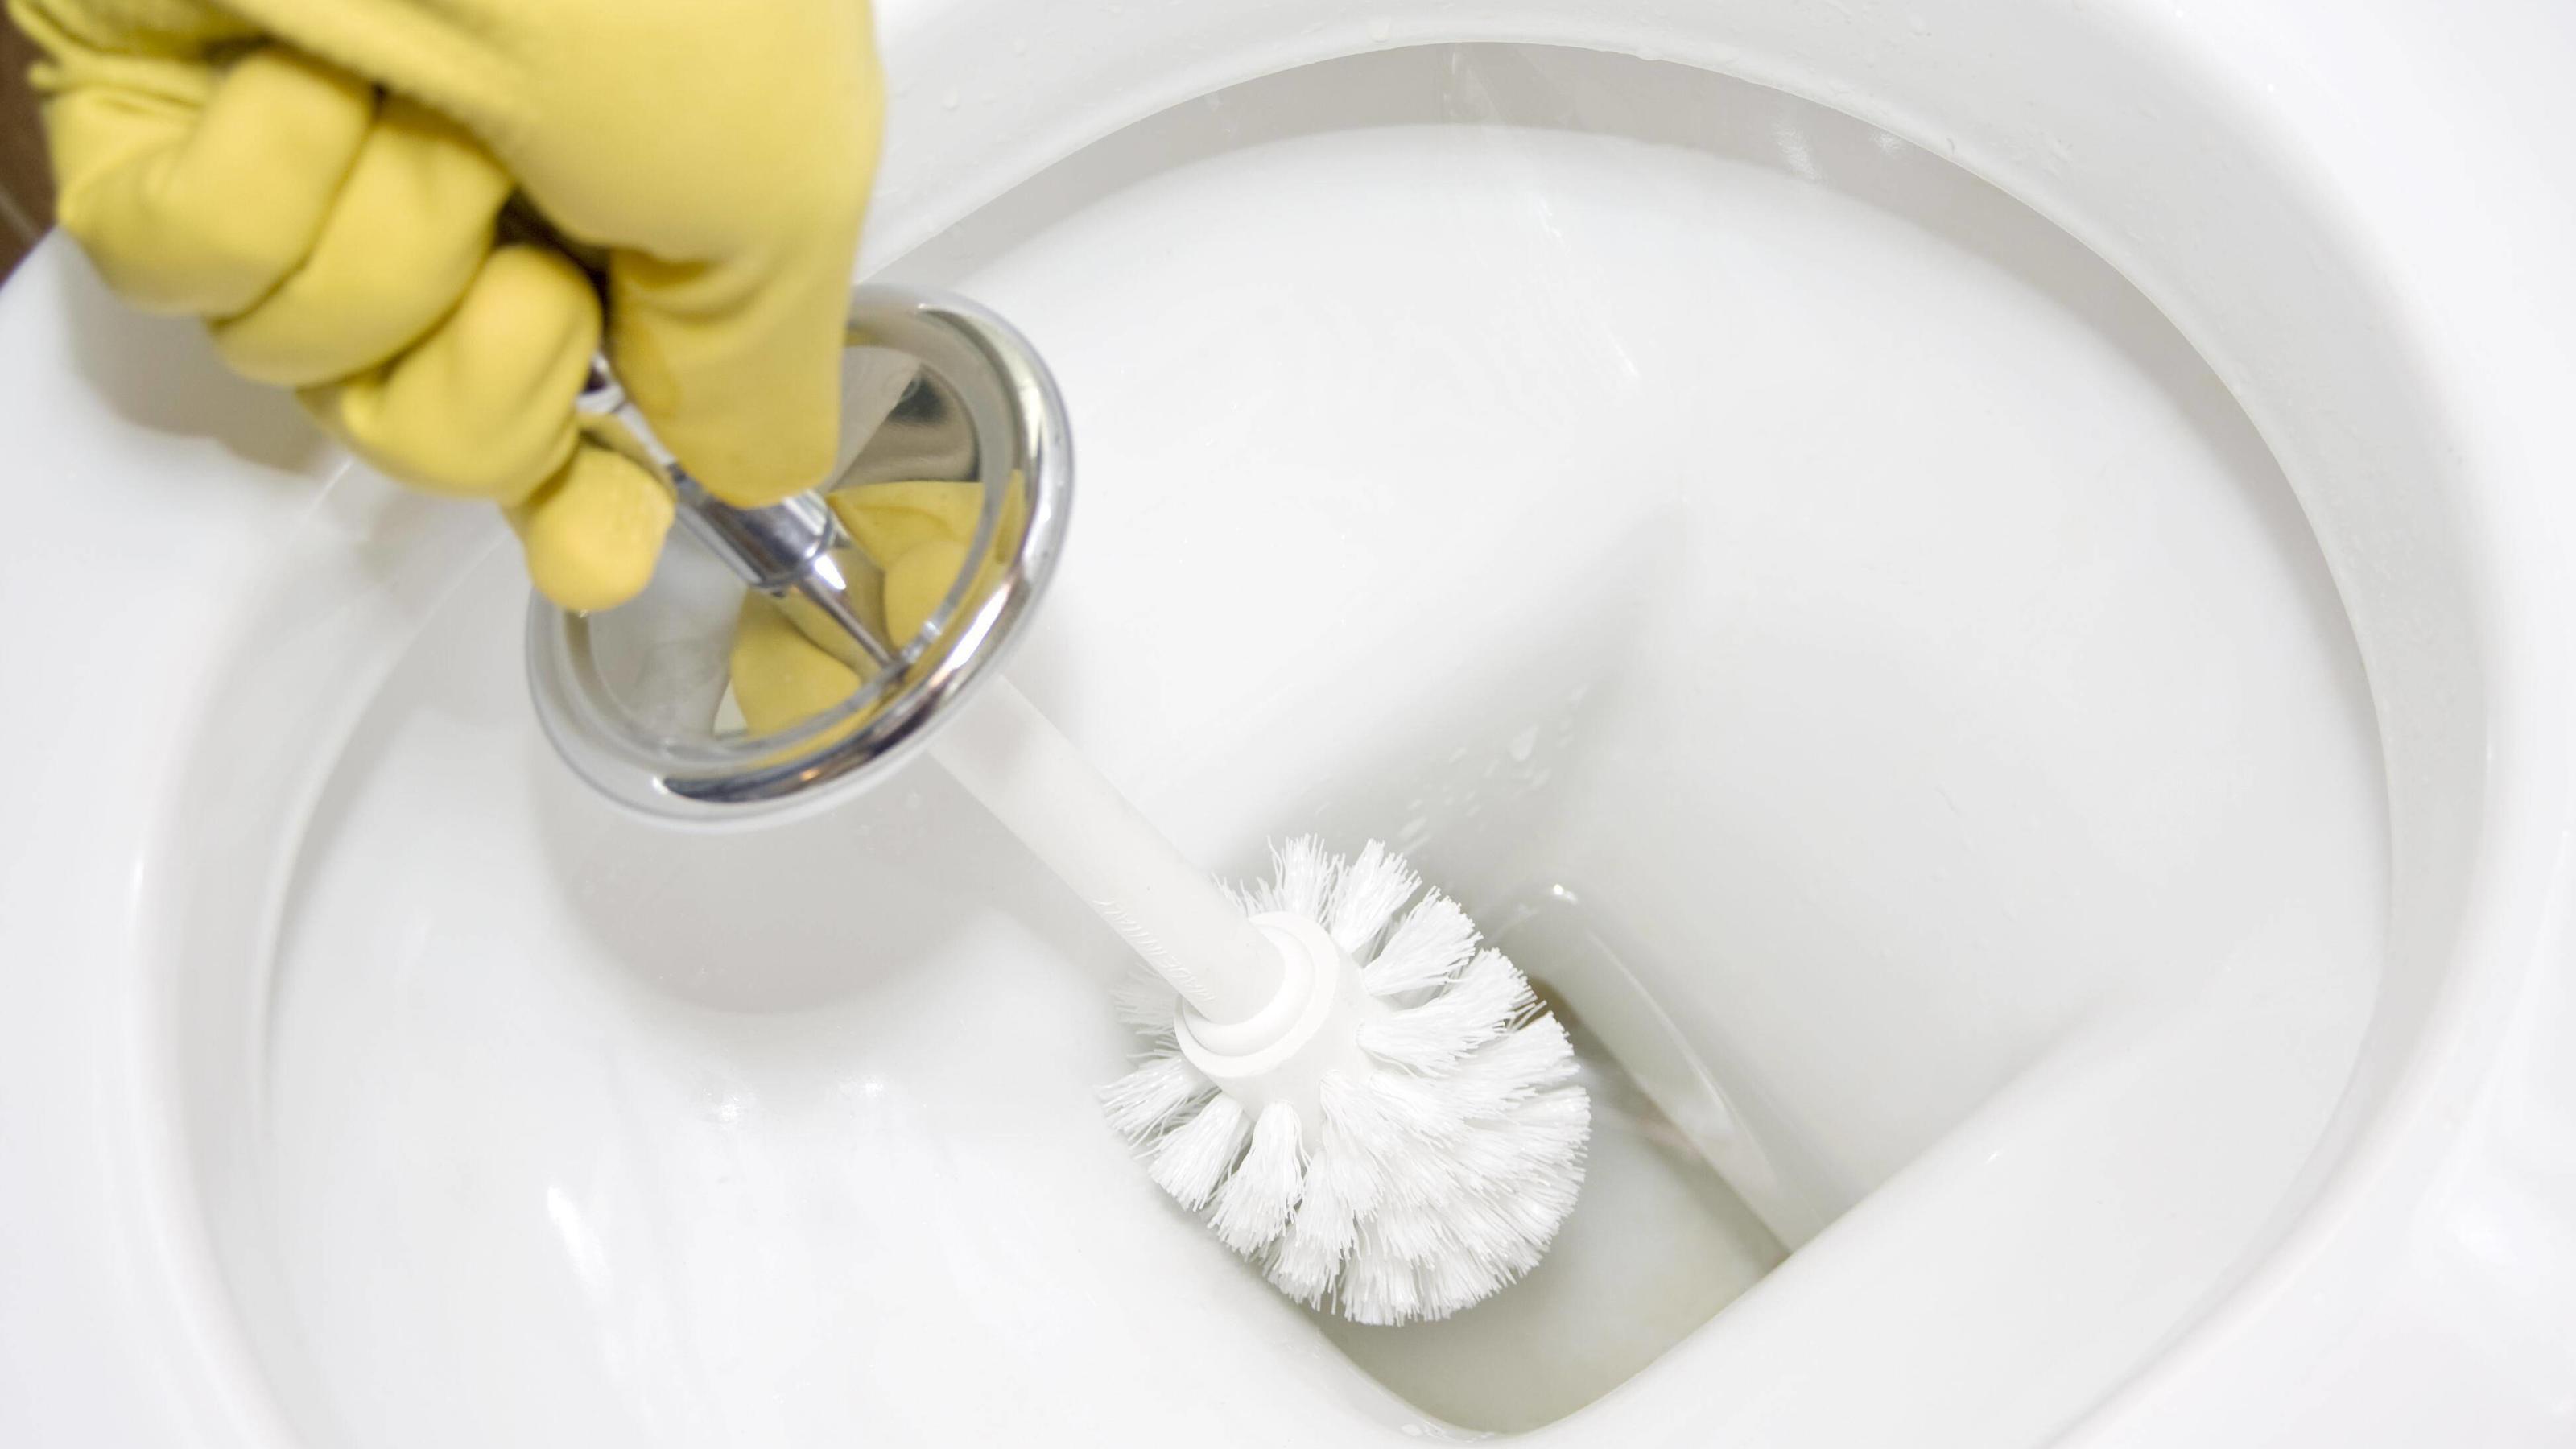 WC reinigen: Tipps und Tricks